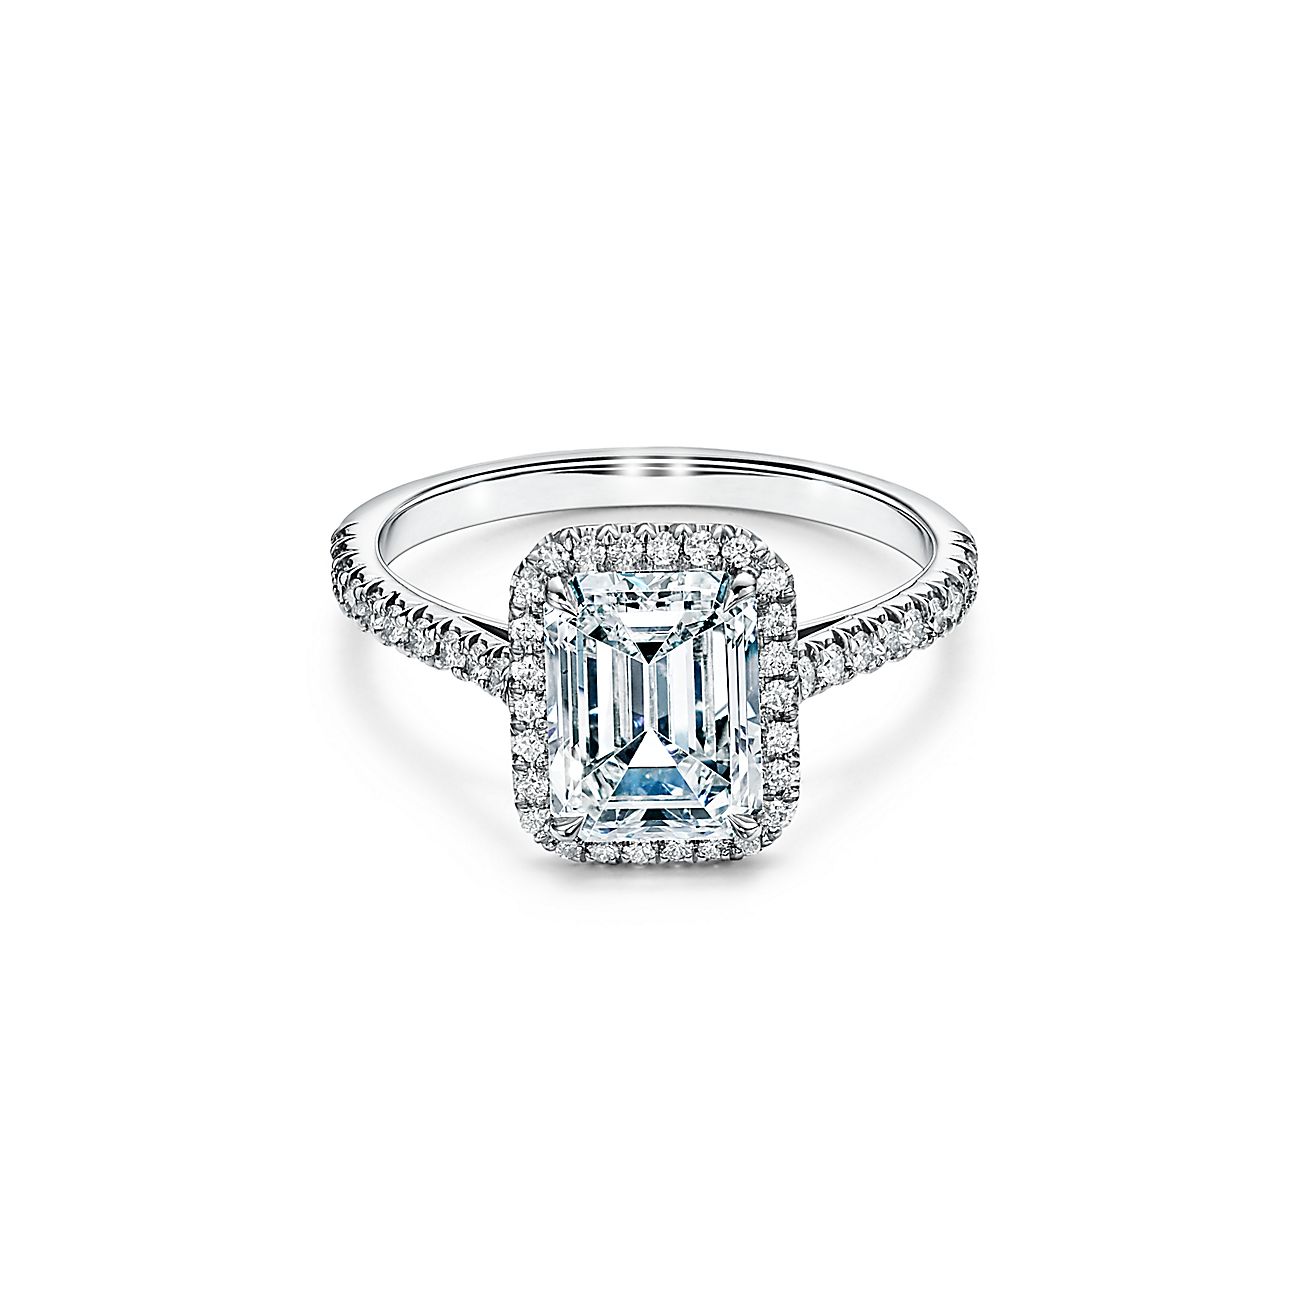 Anillo de compromiso Tiffany Soleste con platino con halo de diamantes talla esmeralda